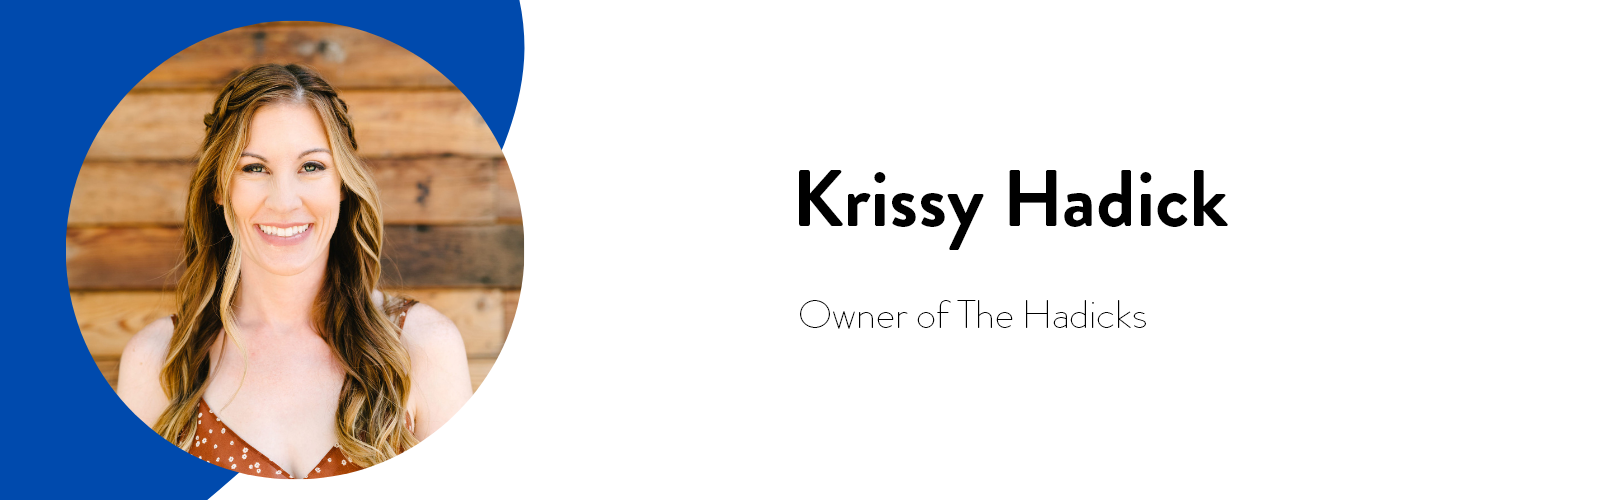 Krissy Hadick (1600 x 500 pixels)